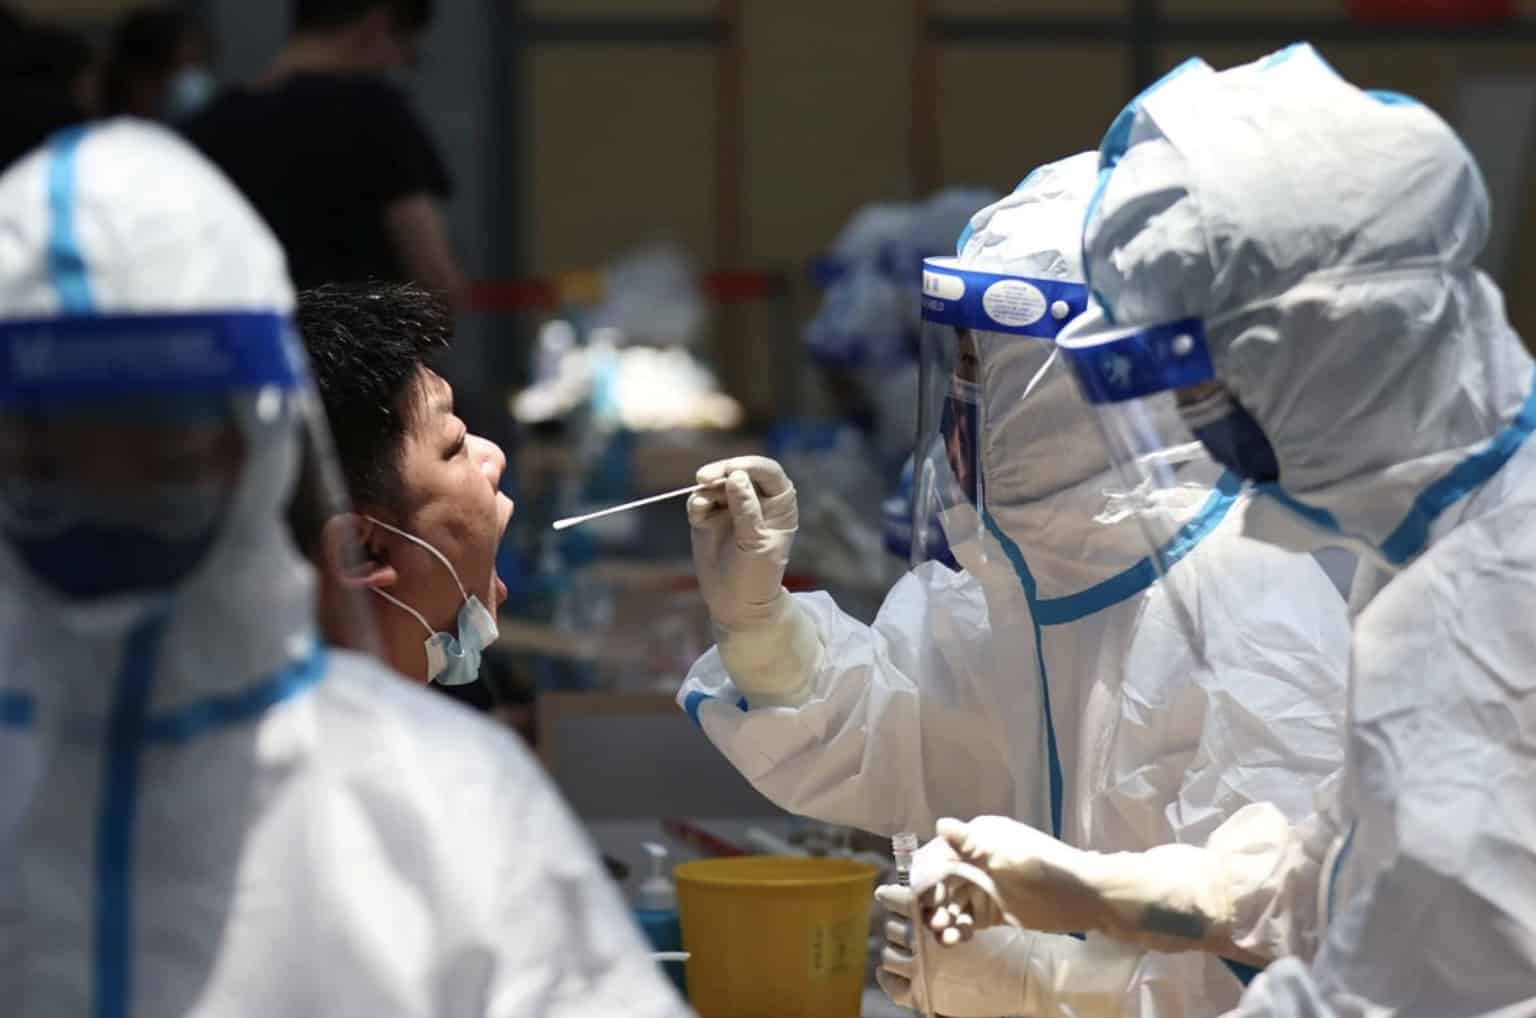 كوفيد -19: مدن صينية تختبر ملايين الأشخاص مع تكاثر حالات الإصابة بالفيروس - أخبار